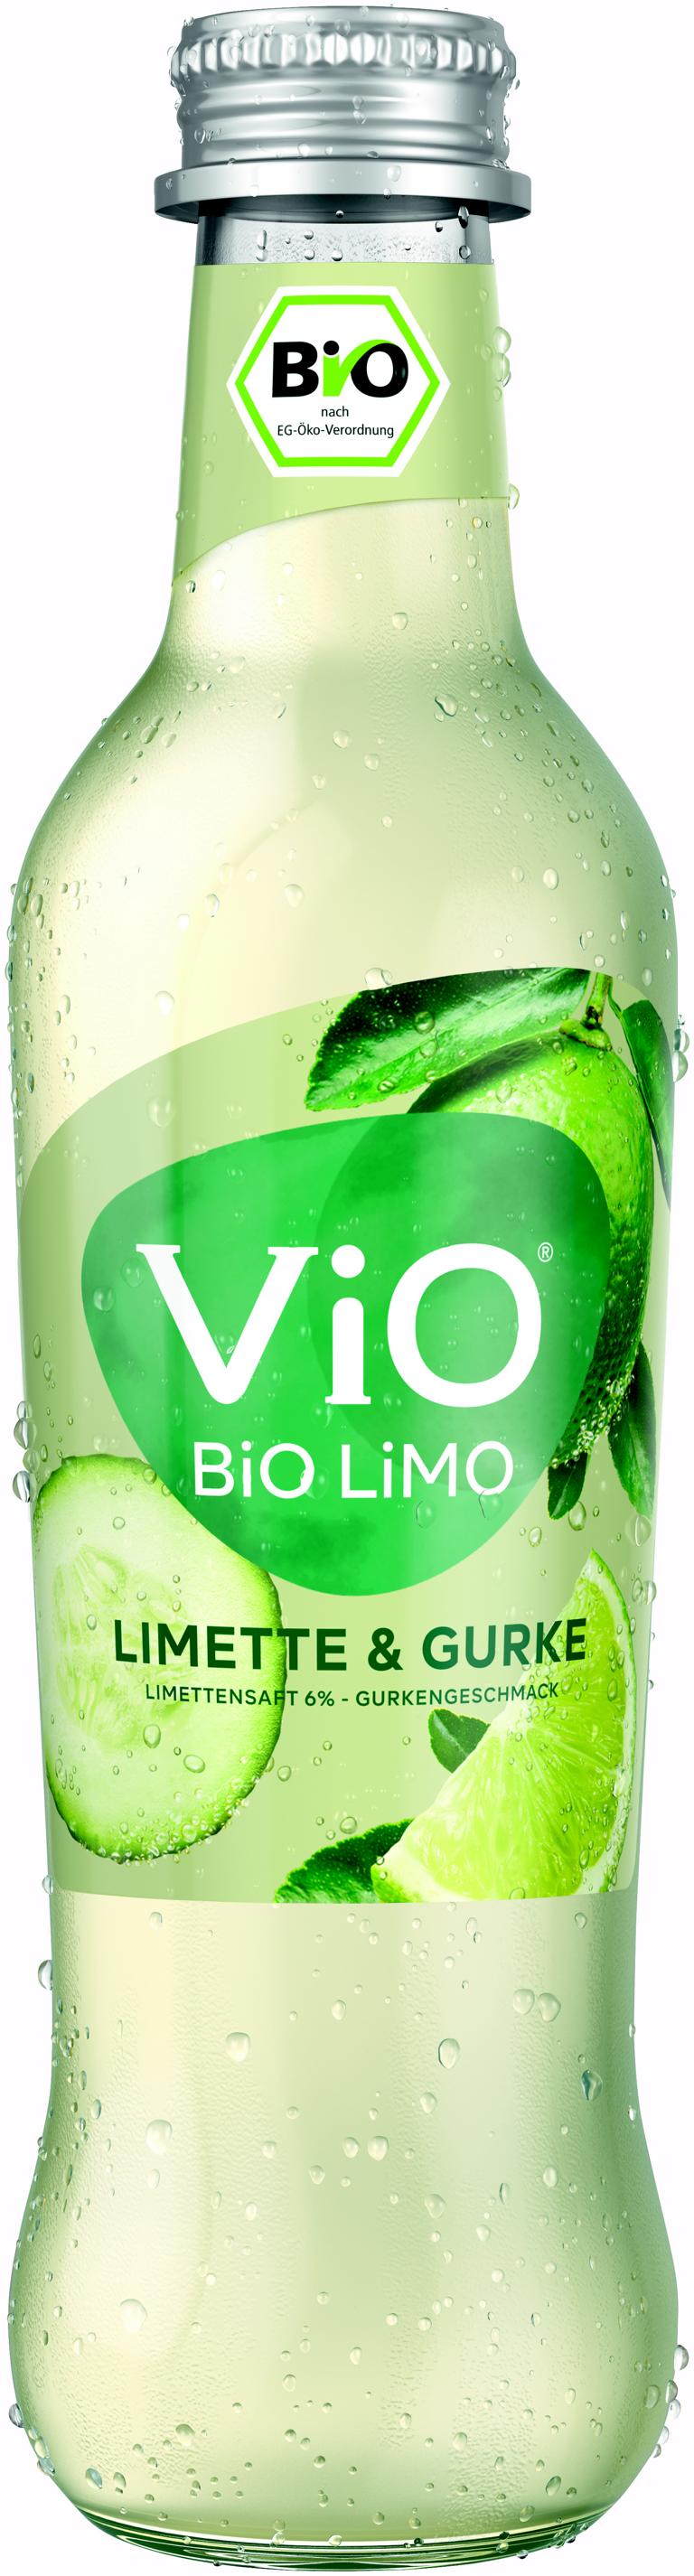 Vio Bio Limo Limette und Gurke 24x0,3 l